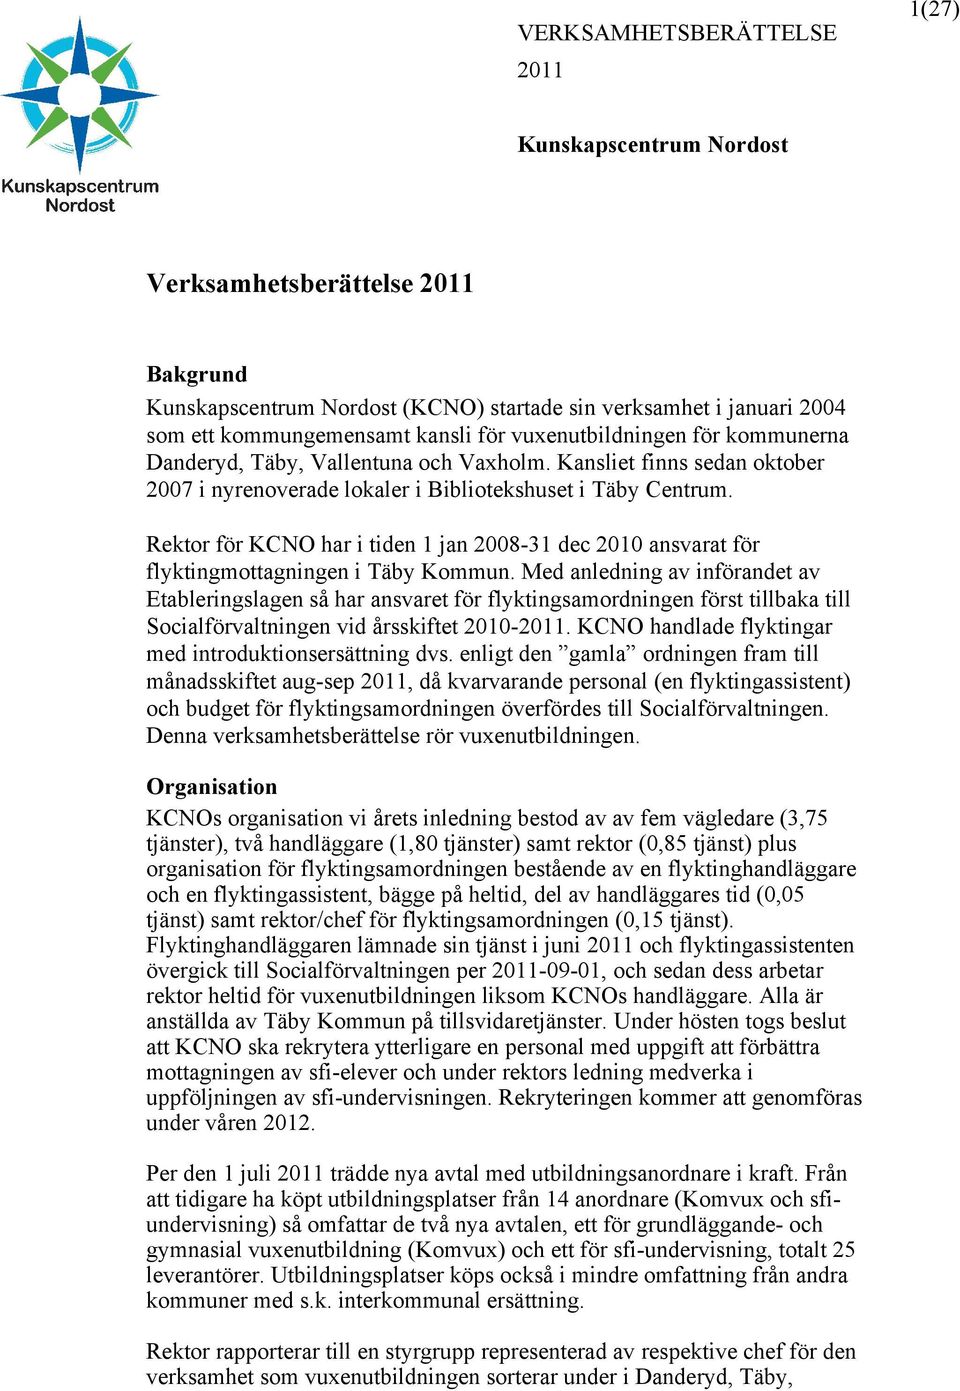 Rektor för KCNO har i tiden 1 jan 2008-31 dec 2010 ansvarat för flyktingmottagningen i Täby Kommun.